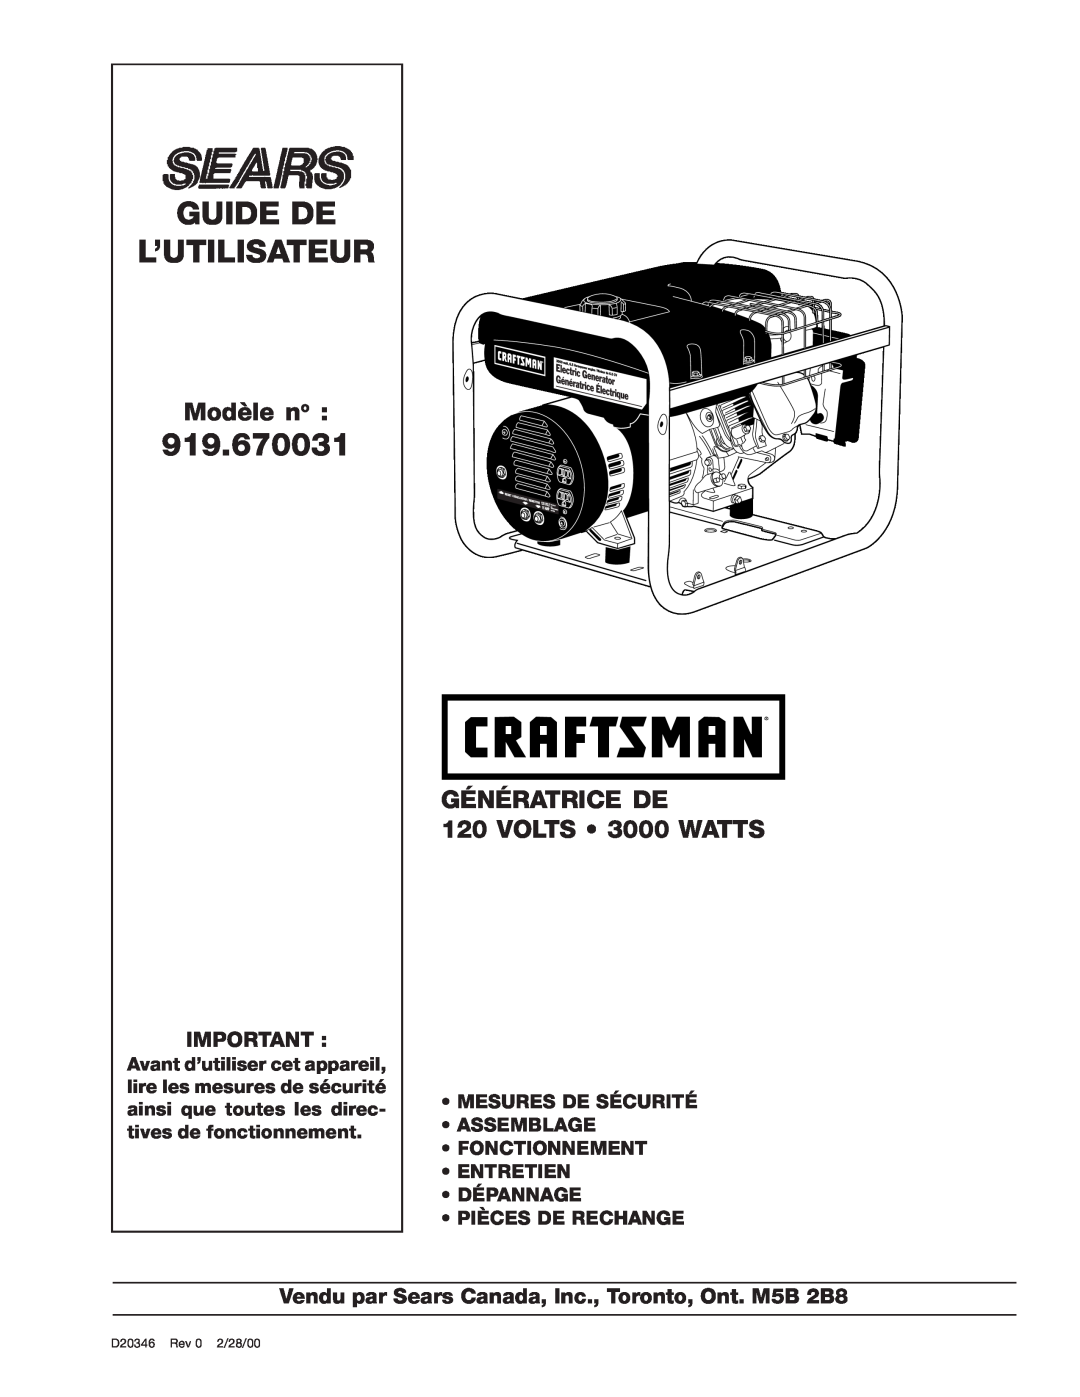 Craftsman 919.670031, D20346 Guide De L’Utilisateur, Modèle no, GÉNÉRATRICE DE 120 VOLTS 3000 WATTS, Pièces De Rechange 